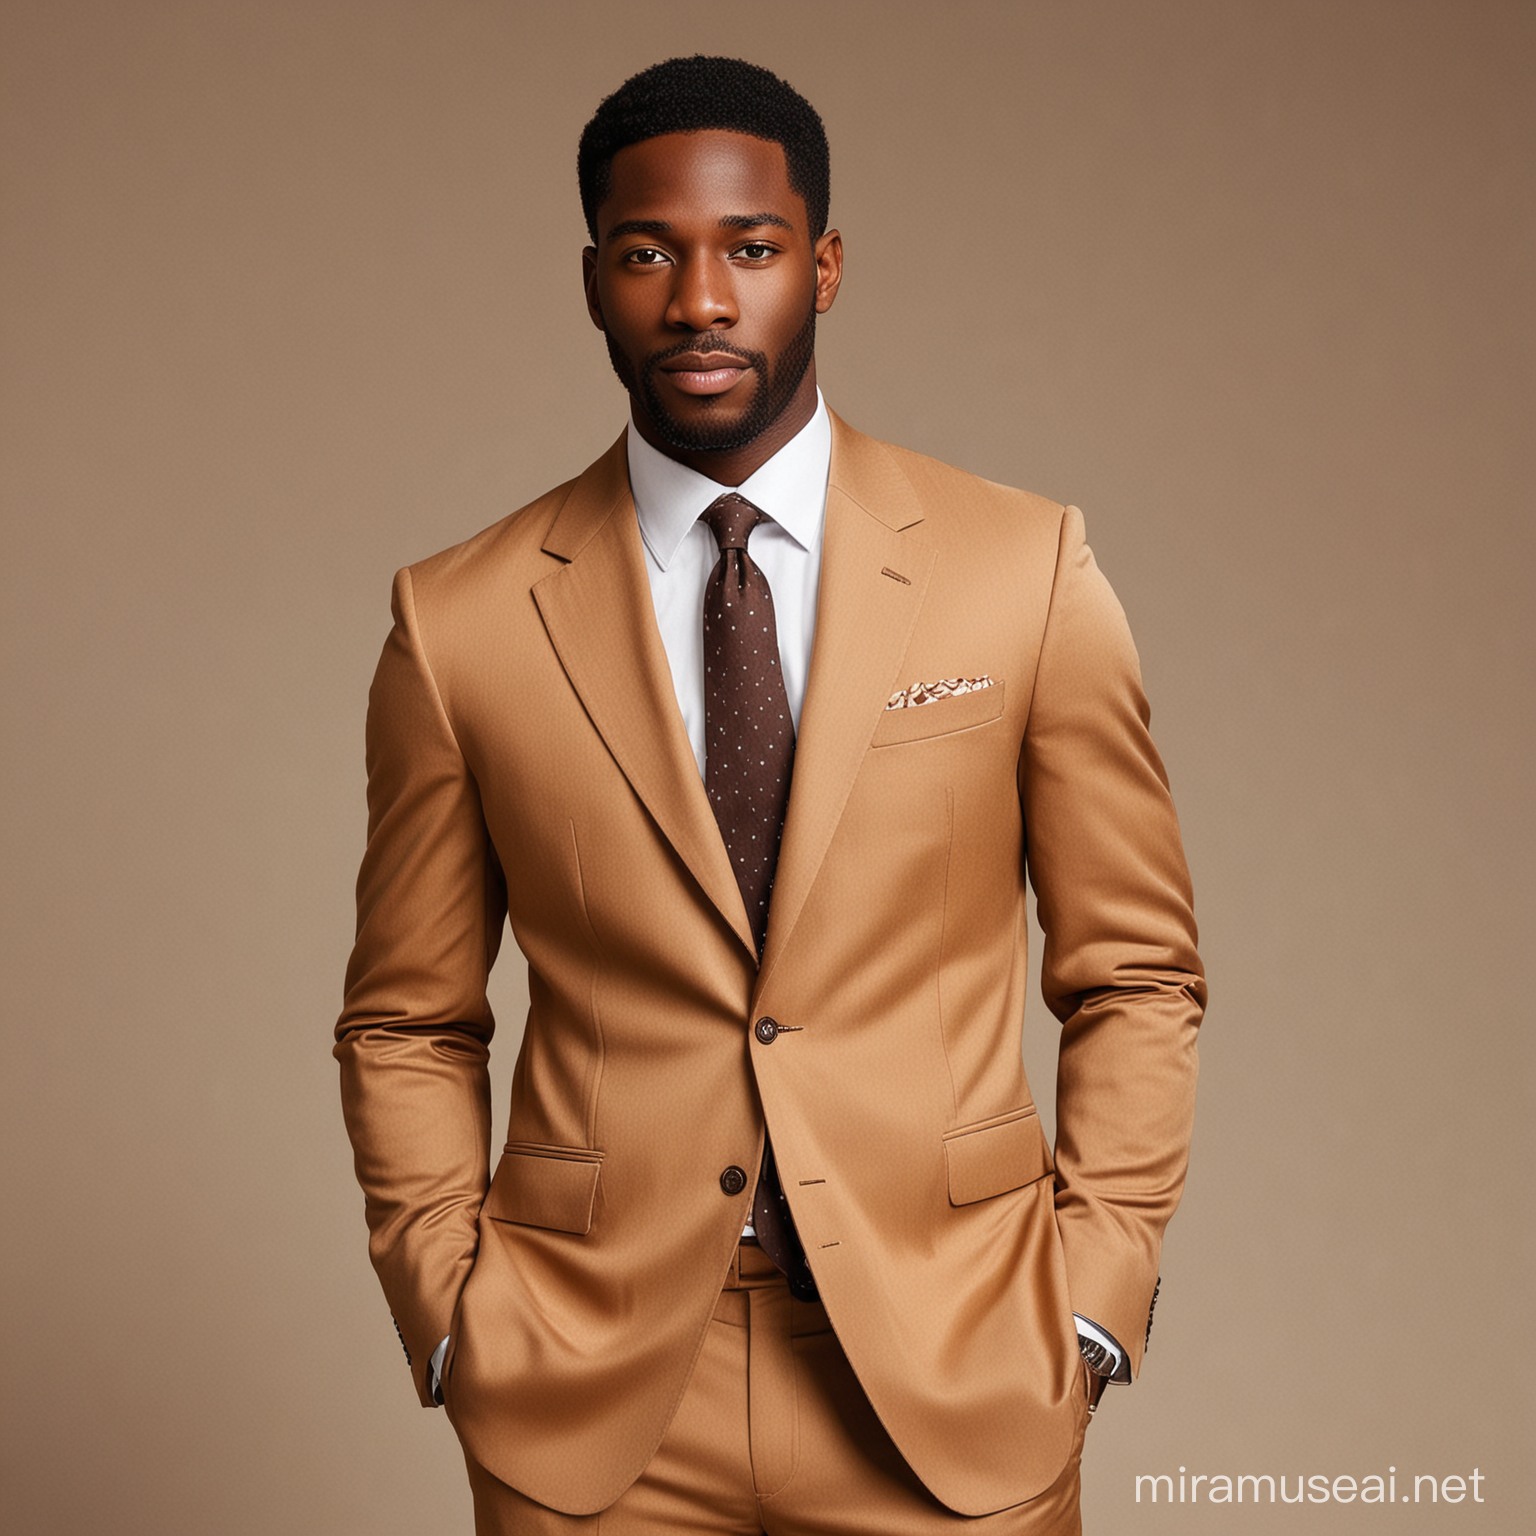 Black man in brown suit